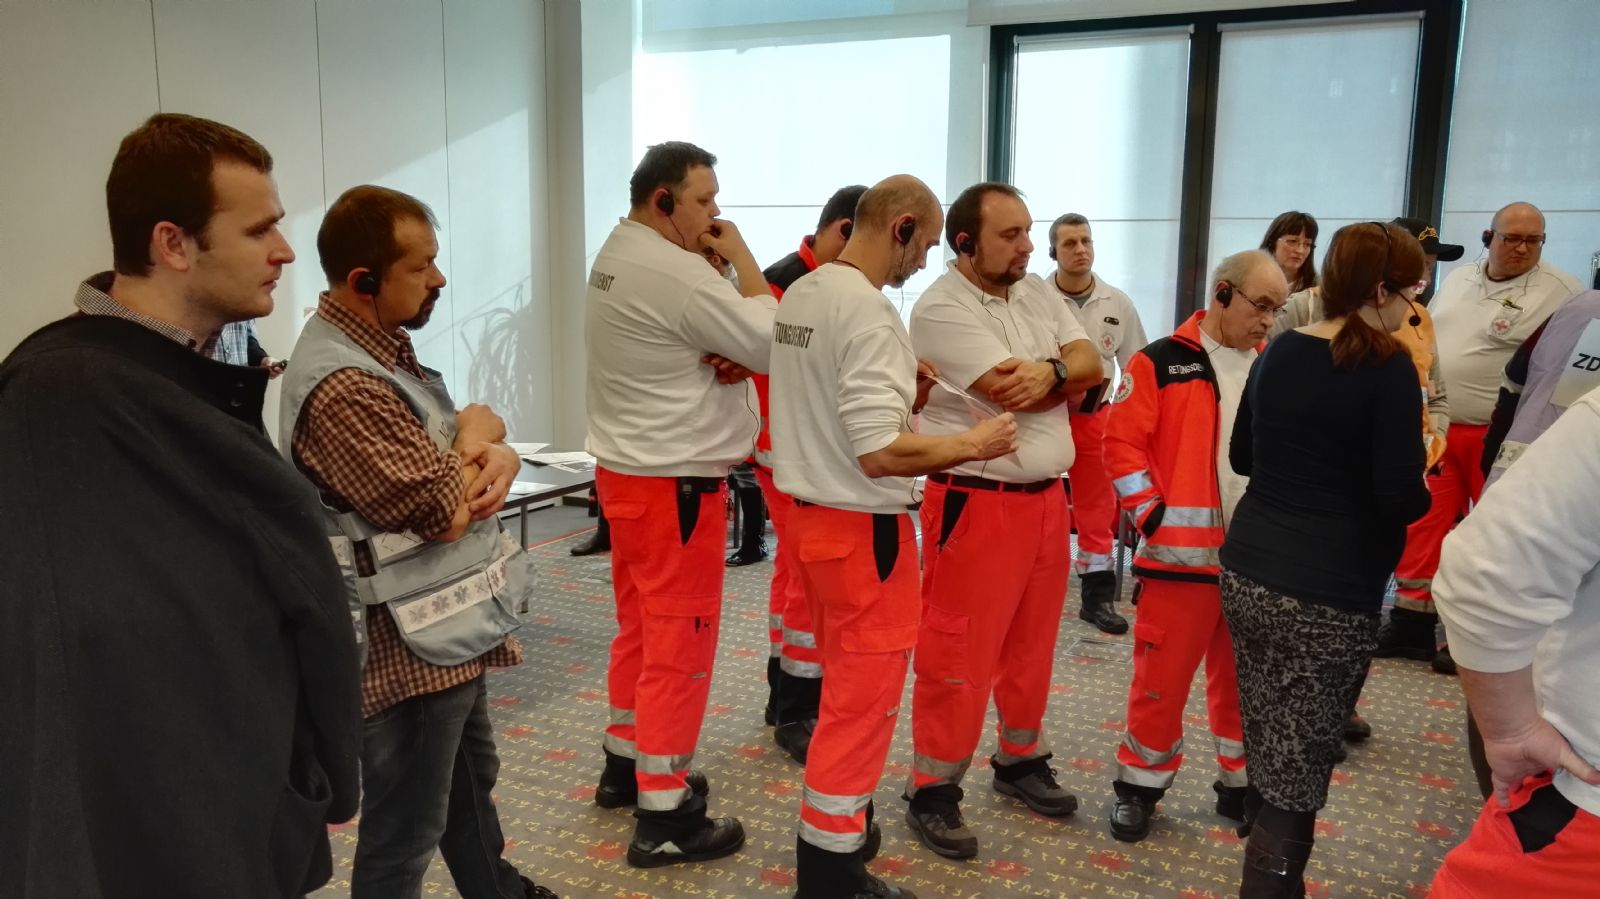 Zdravotnické záchranné služby česko-bavorského pohraničí zintenzivňují spolupráci